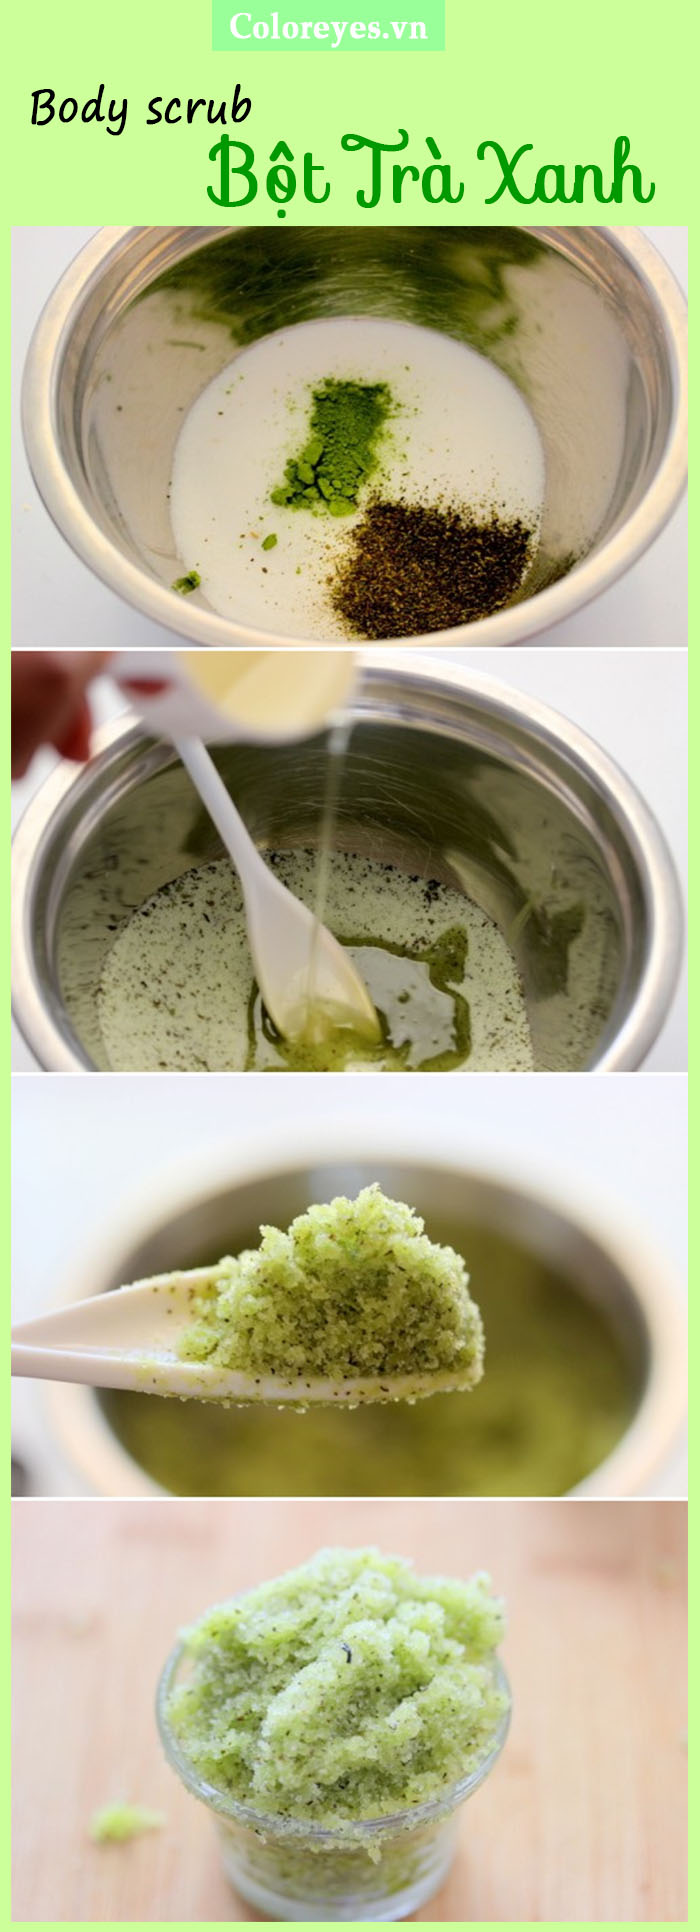 Cách làm body scrub bột trà xanh